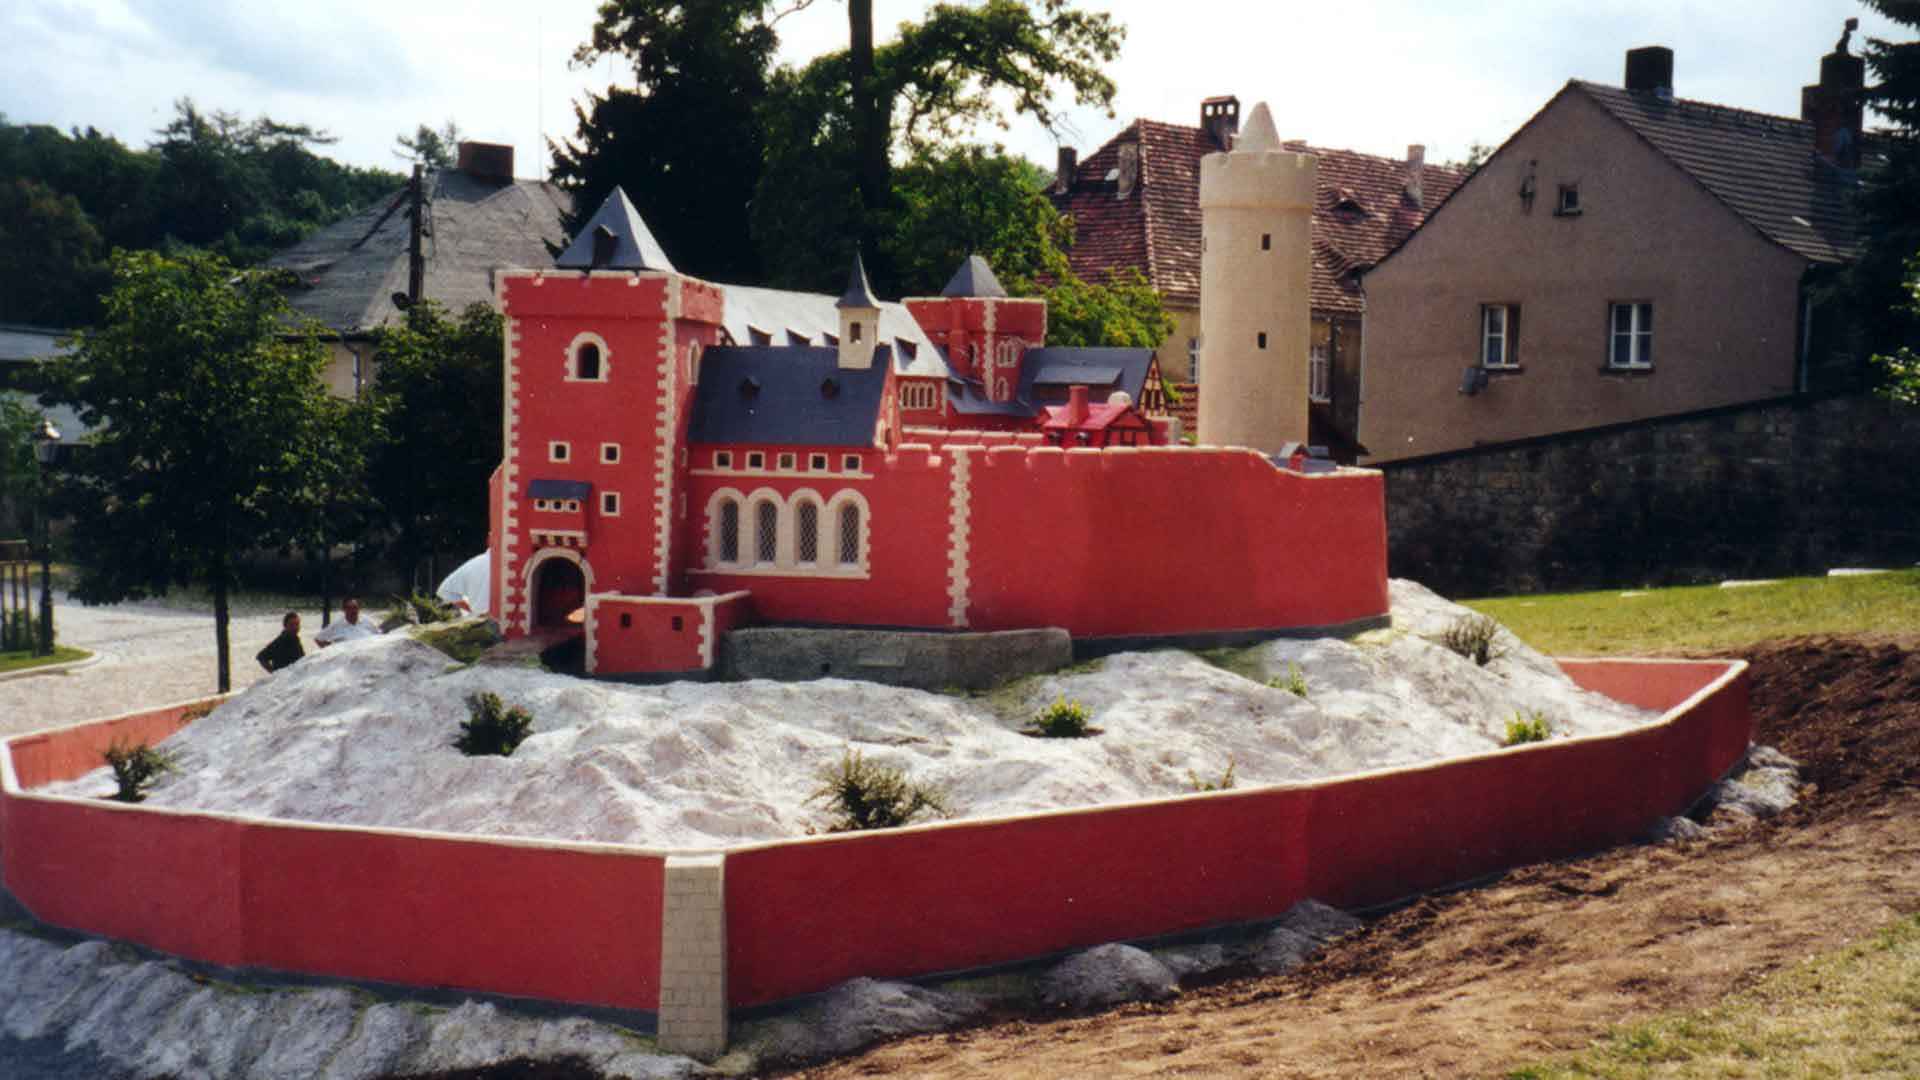 Modell der Burg Anhalt im Schlosspark Ballenstedt